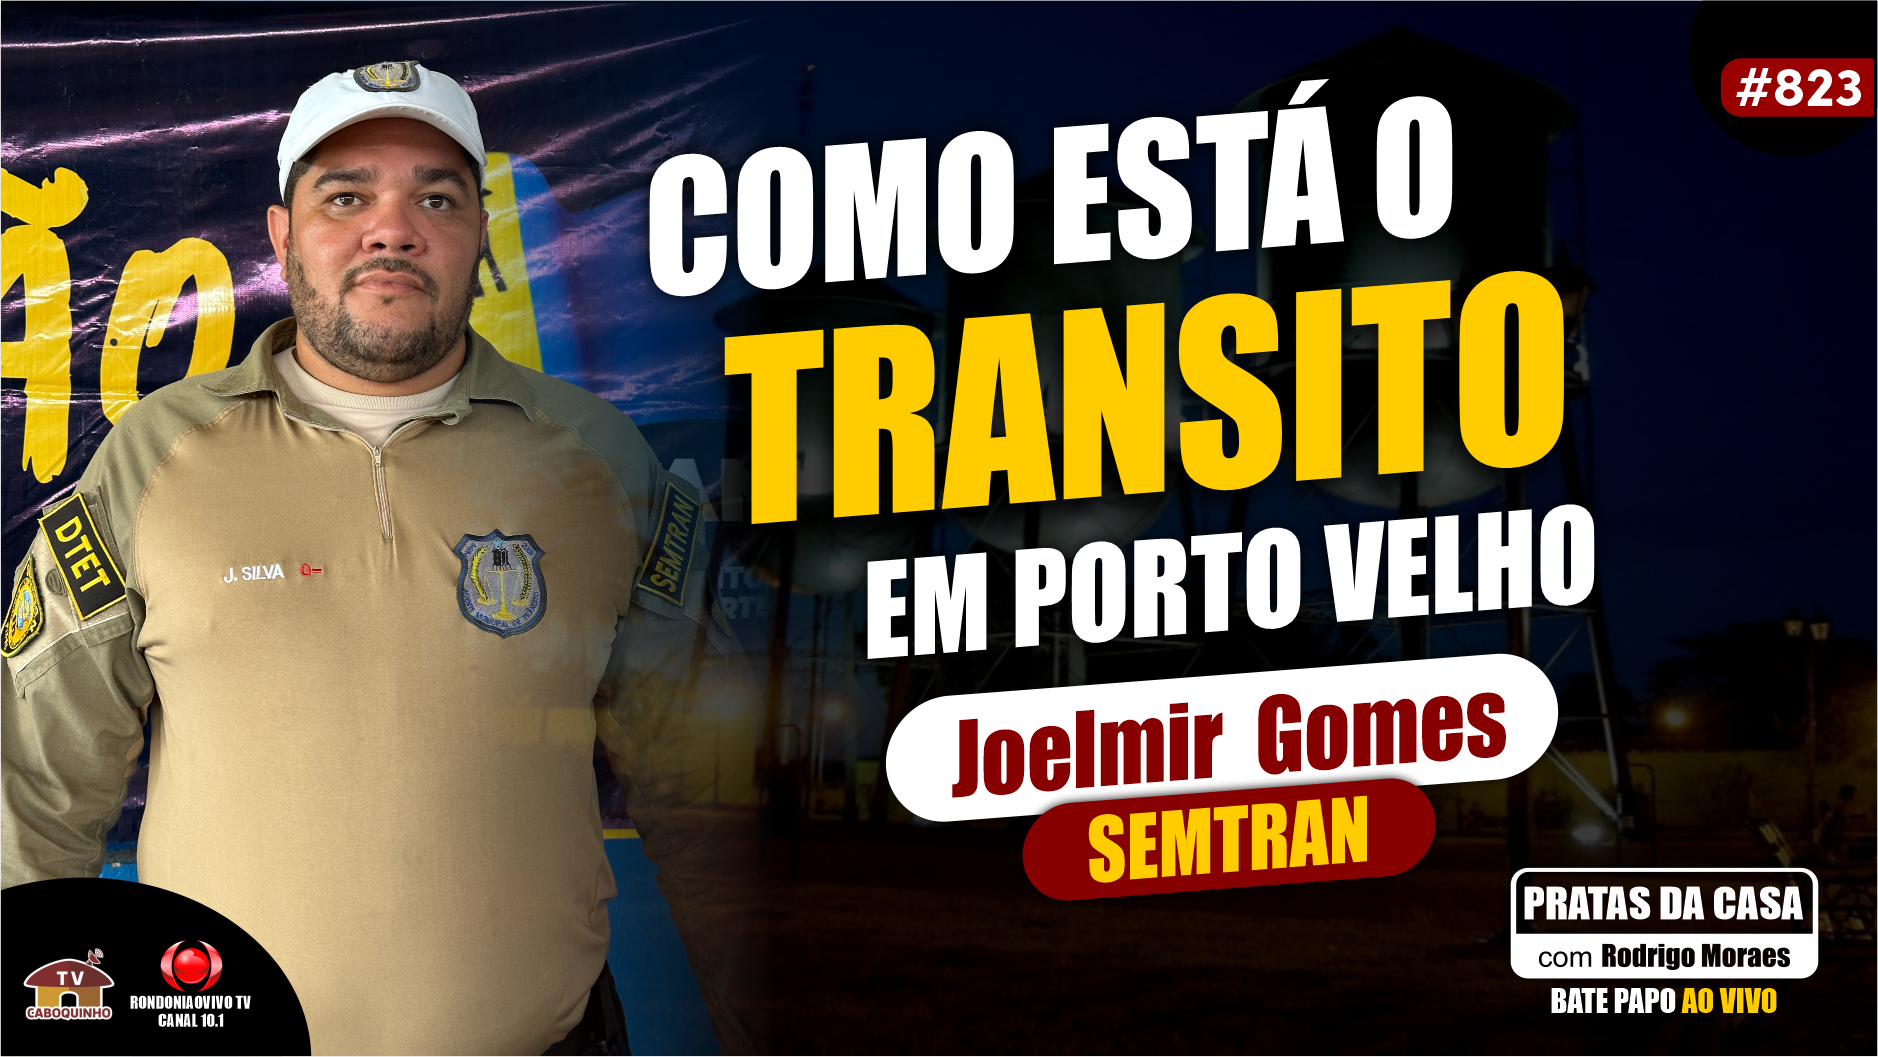 O TRÂNSITO EM PORTO VELHO - JOELMIR GOMES DA SEMTRAN - #PRATASDACASA #823 #rondonia